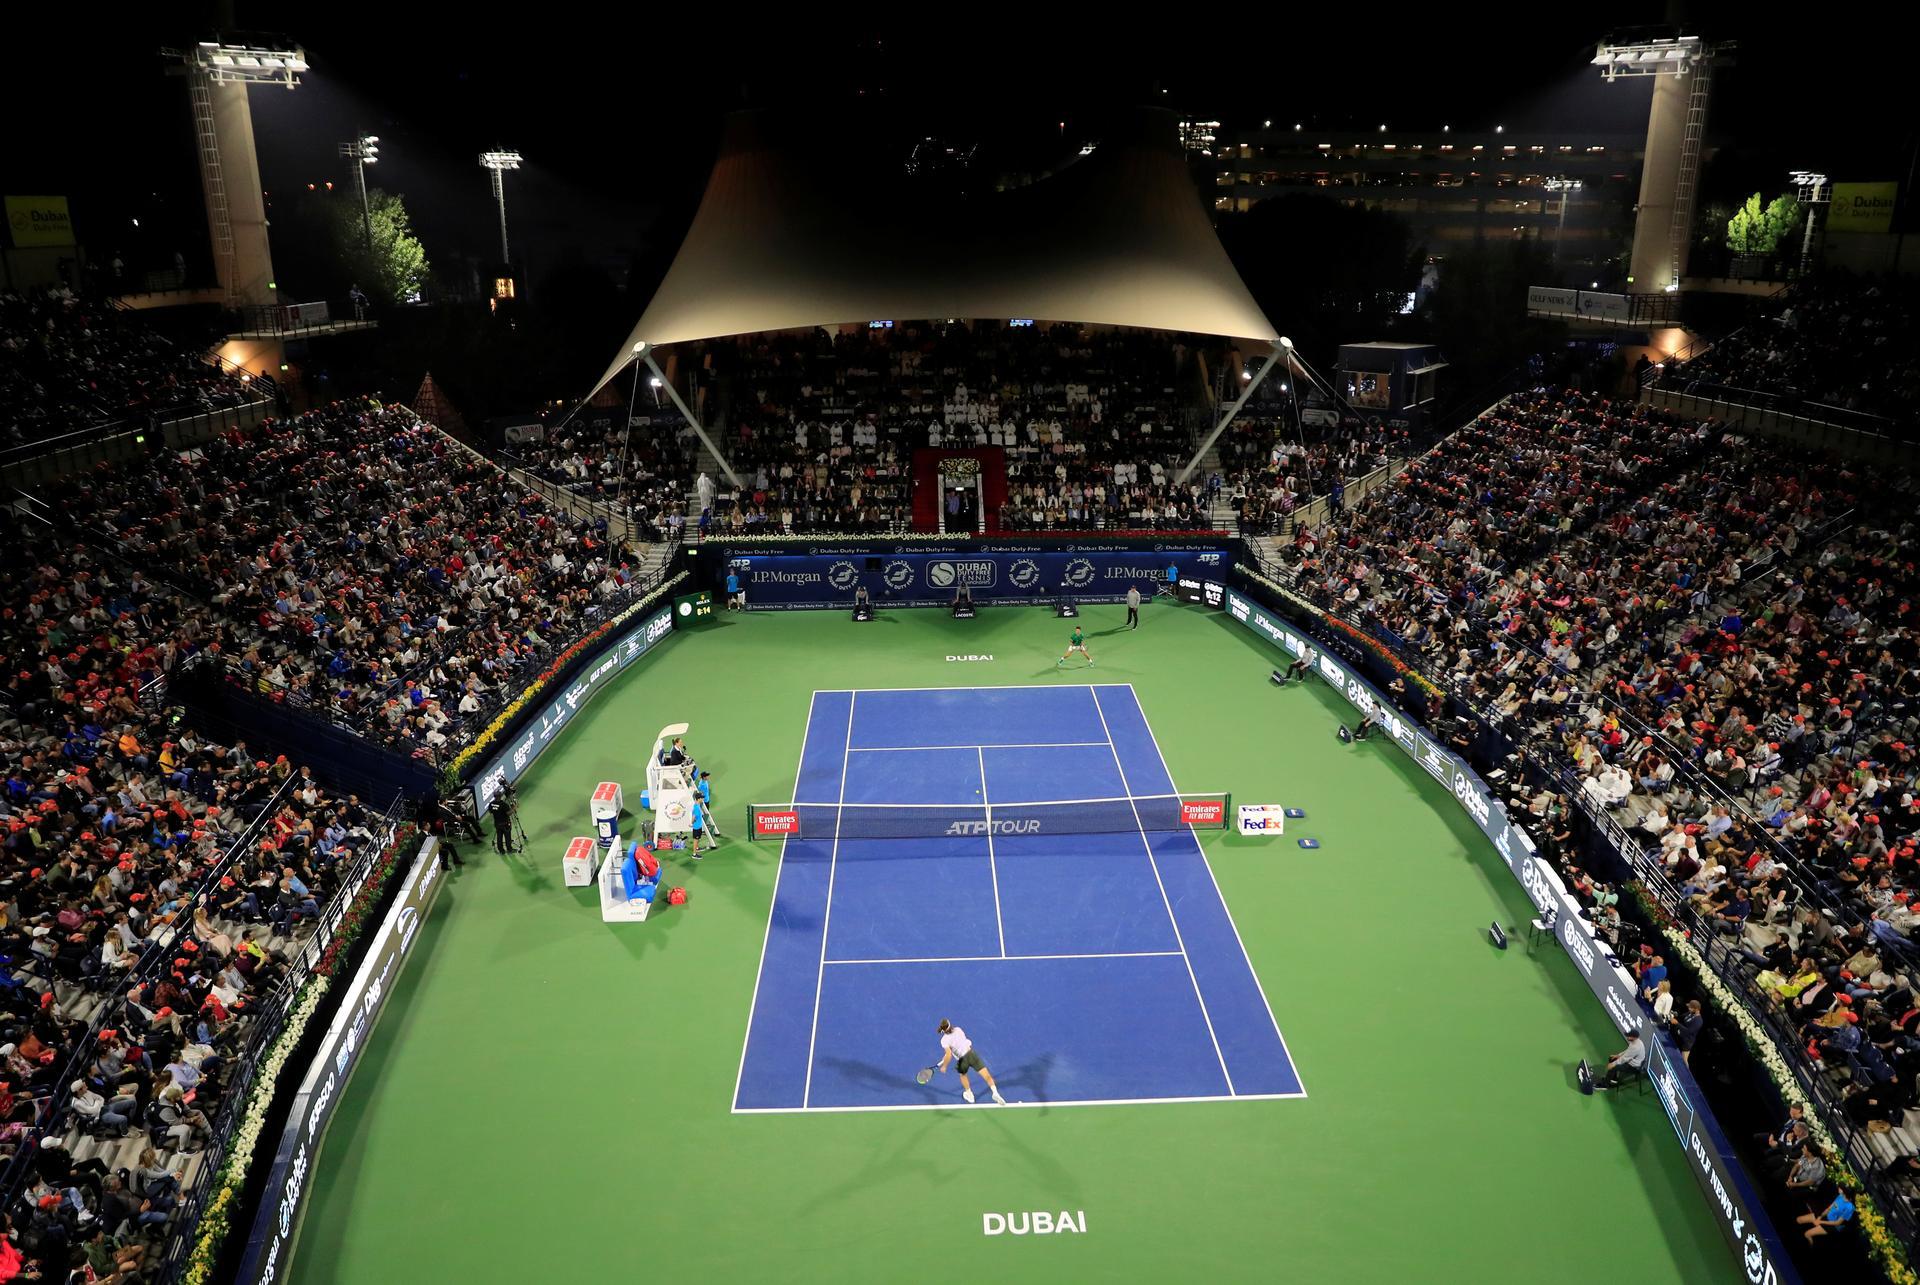 ATP 500 Dubai. Dubai Tennis Stadium. Atp dubai